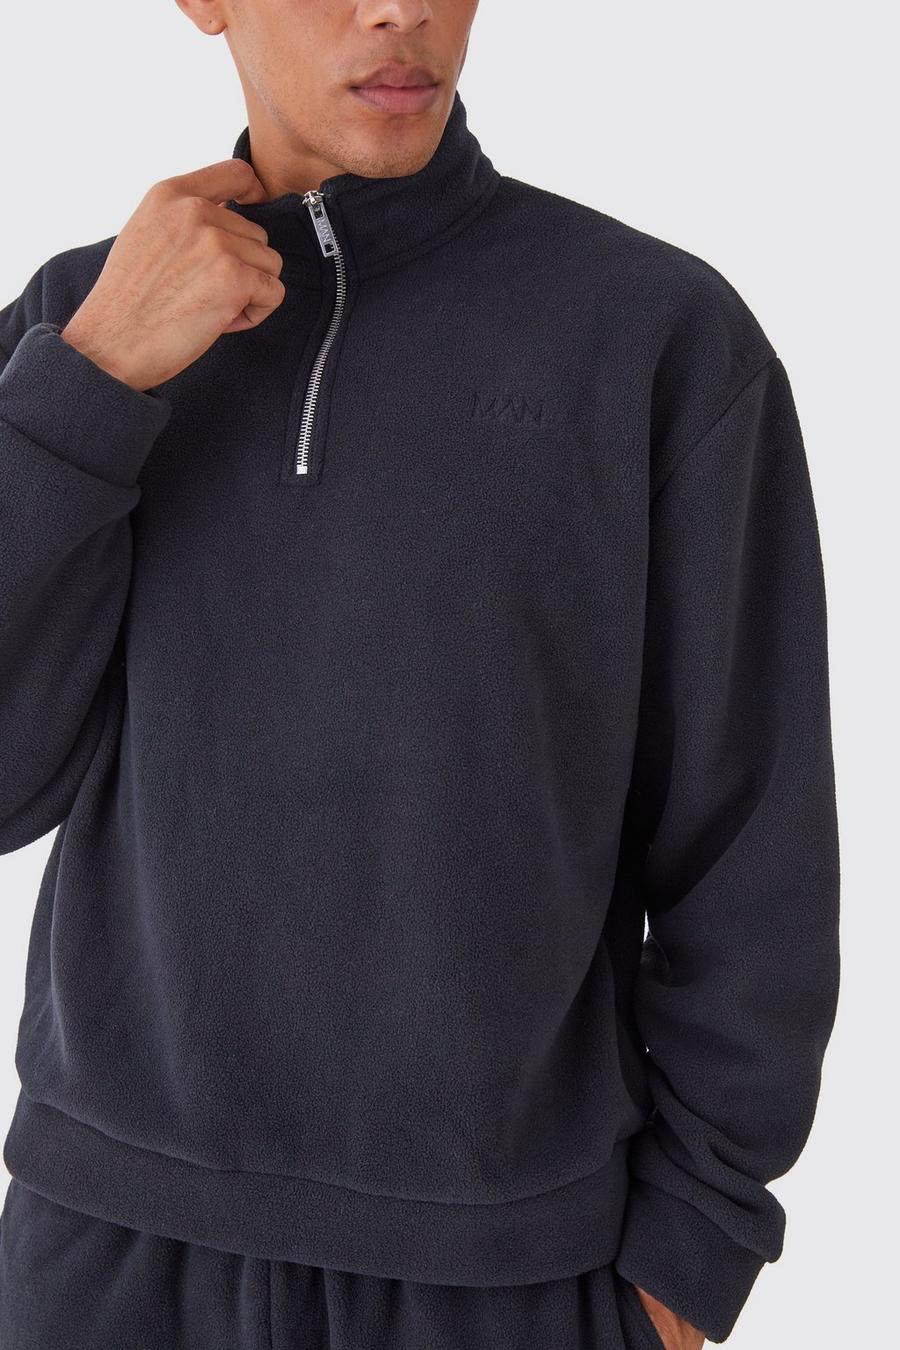 Black Oversized Boxy 1/4 Zip Bonded Microfleece Man Sweatshirt